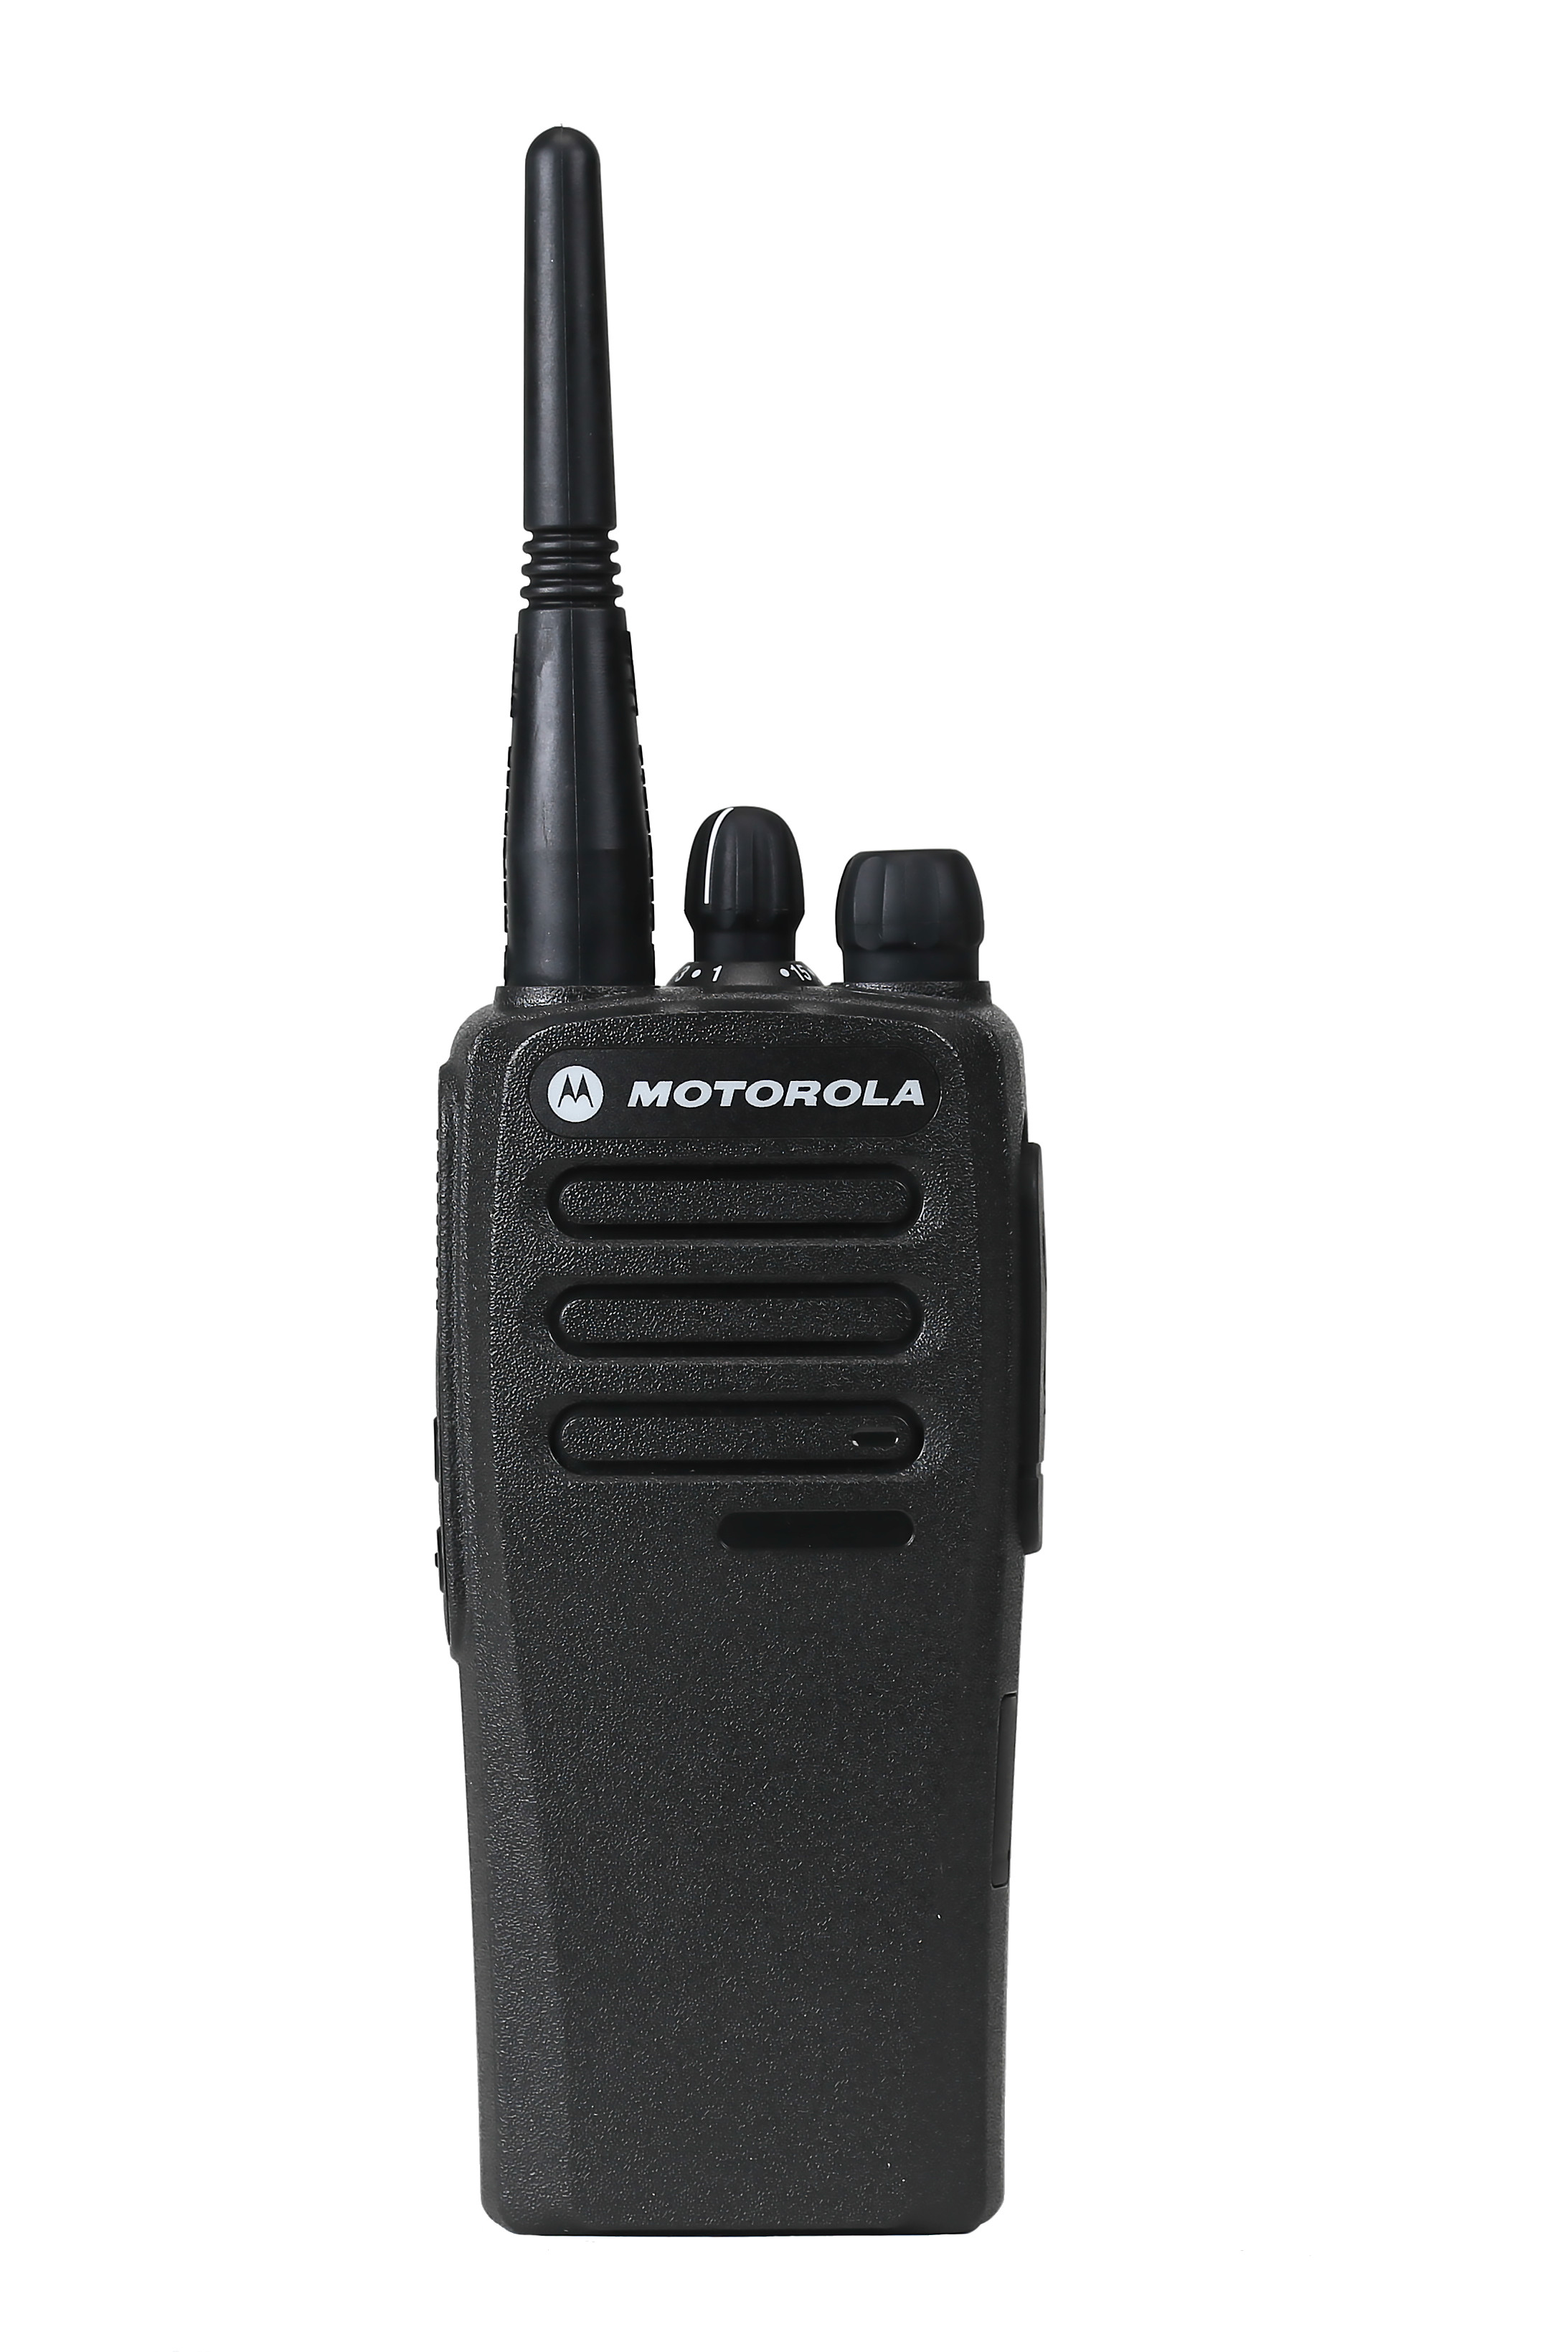 SET - Radiostanice MOTOTRBO DP1400 DMR+ VHF anténa + NiMH baterie + rychlonabíječka